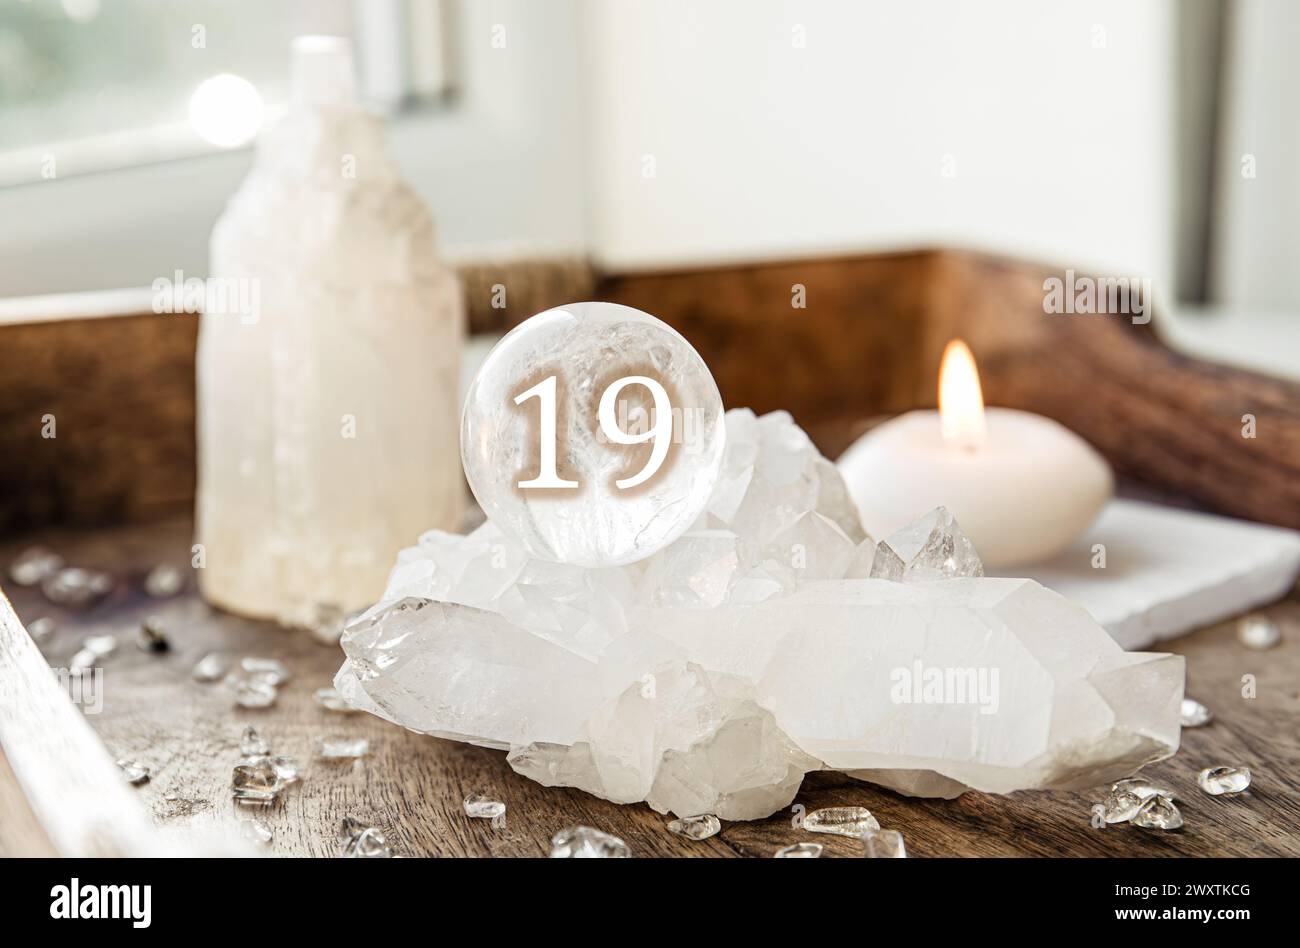 Numéro dix-neuf sur une sphère de pierres précieuses ou boule de cristal connue sous le nom de cristallum orbis ou orbuculum. Boule de quartz clair naturel sur support sur plateau en bois à la maison. Banque D'Images